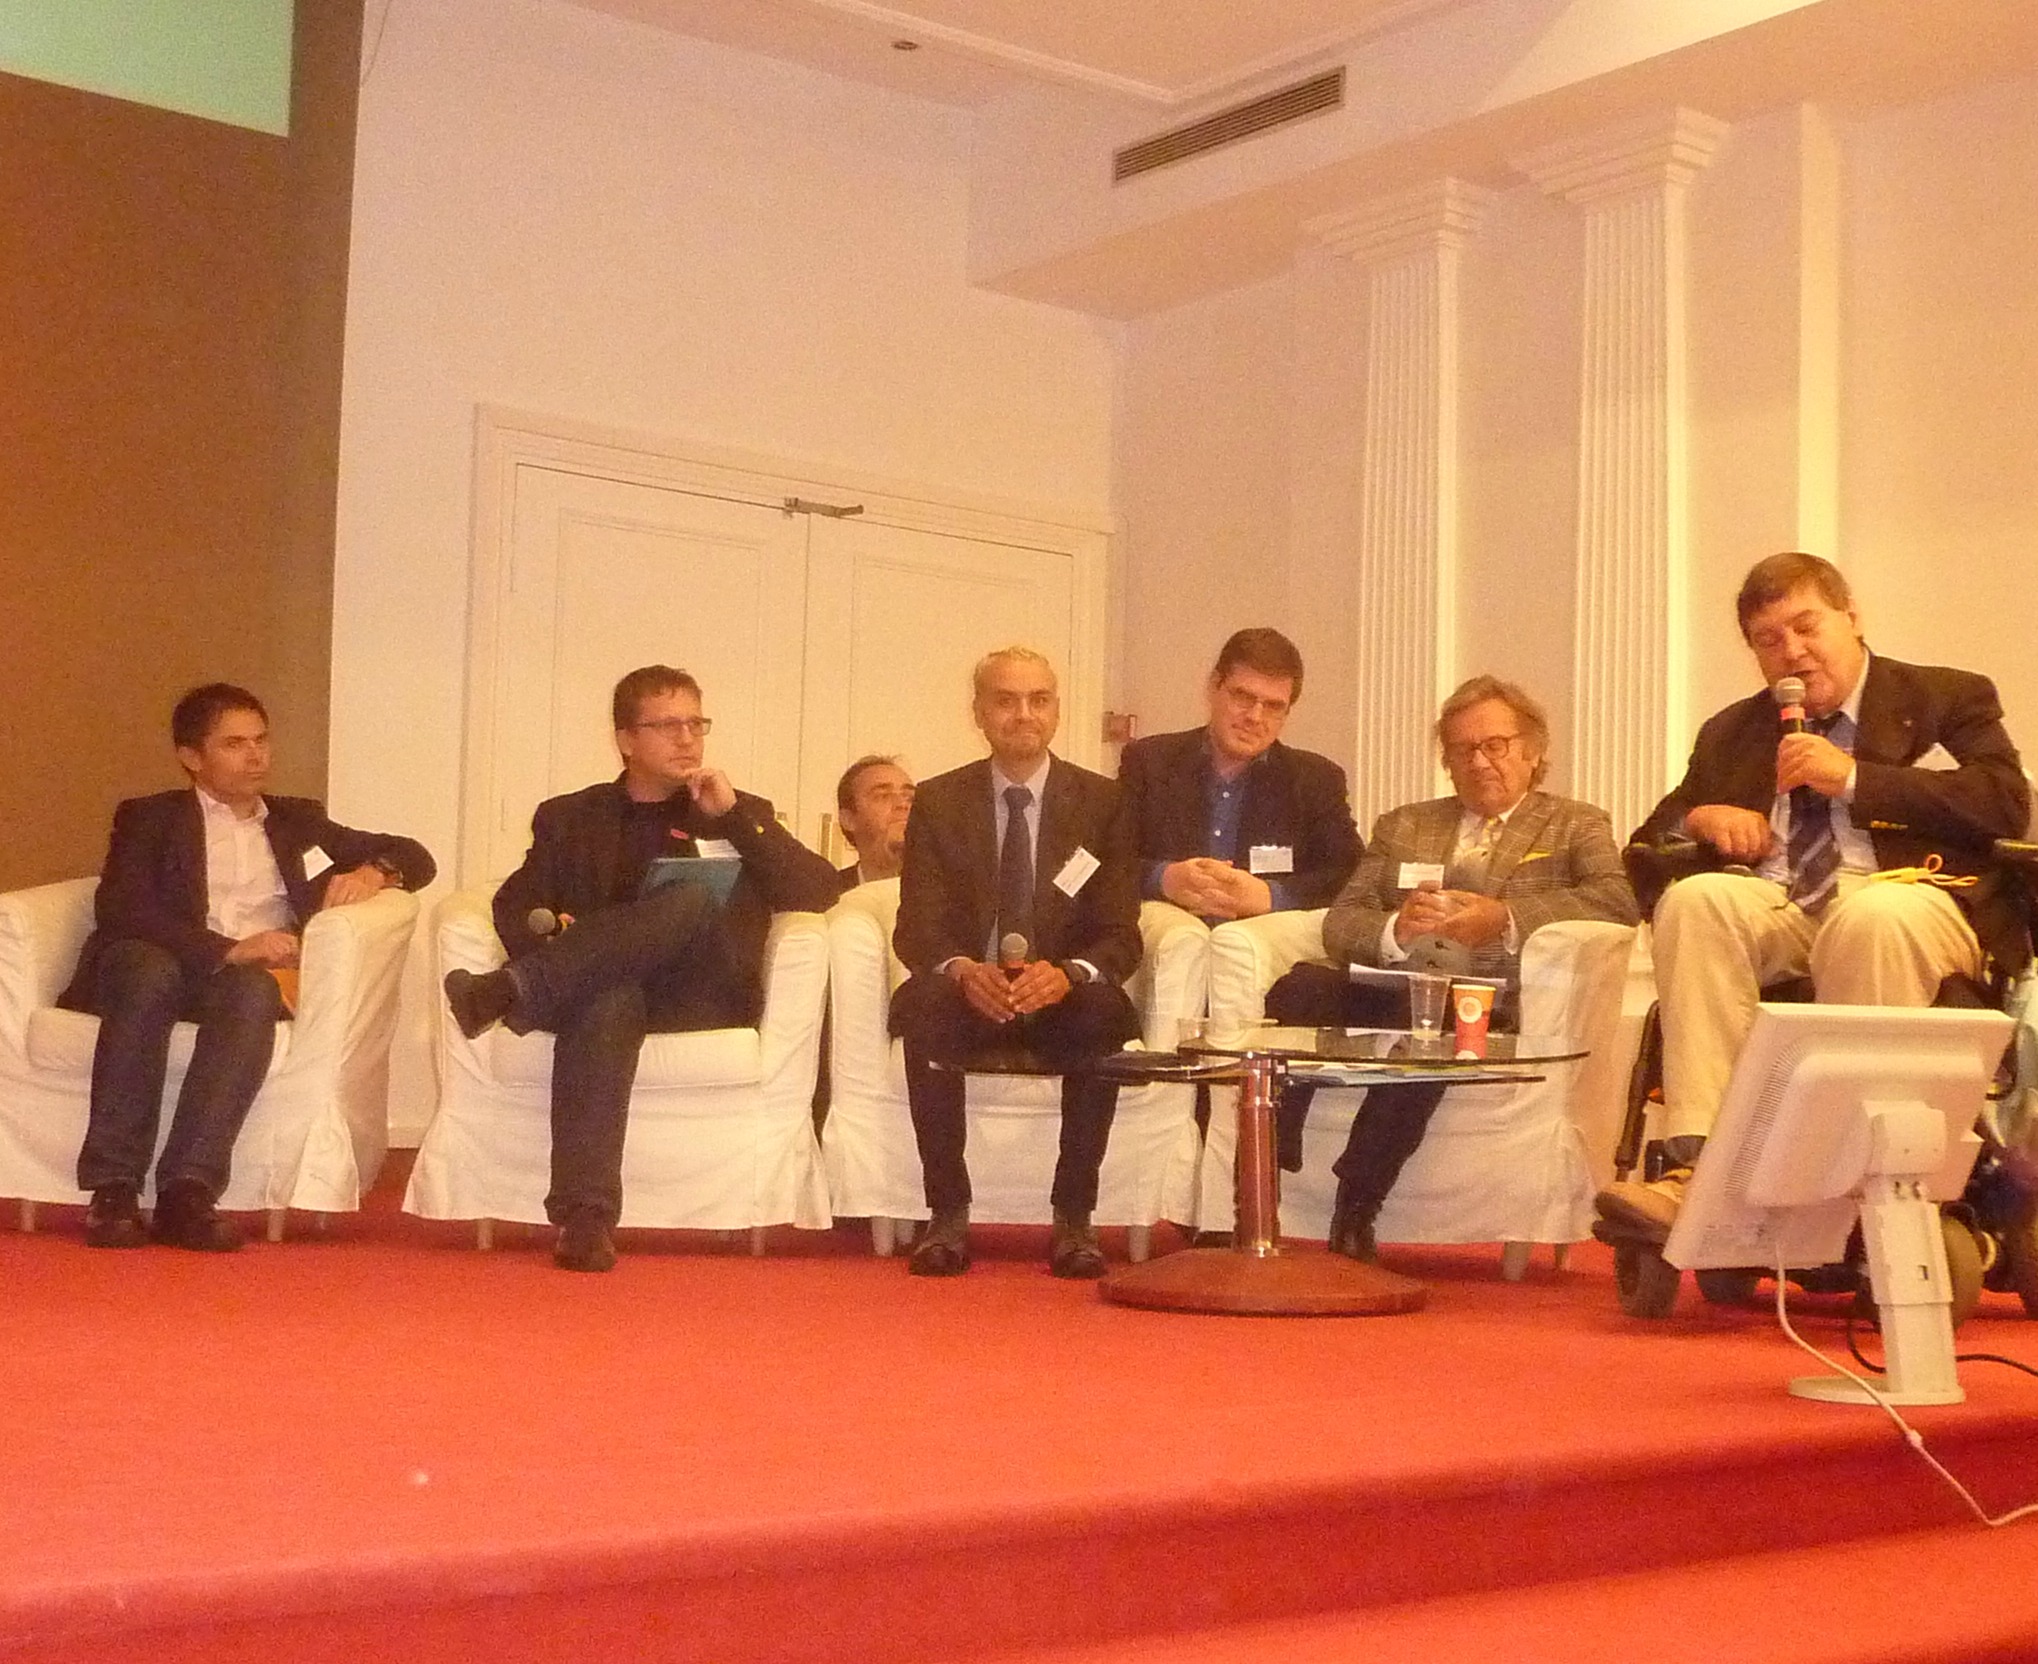 Red Carpet Day 2014 : Edouard Braine (à droite sur l’image) présente sa Braine Acadamy, des entrepreneurs confirmés ou jeunes pousses qui rêvent d’exporter leurs produits et leur savoir-faire